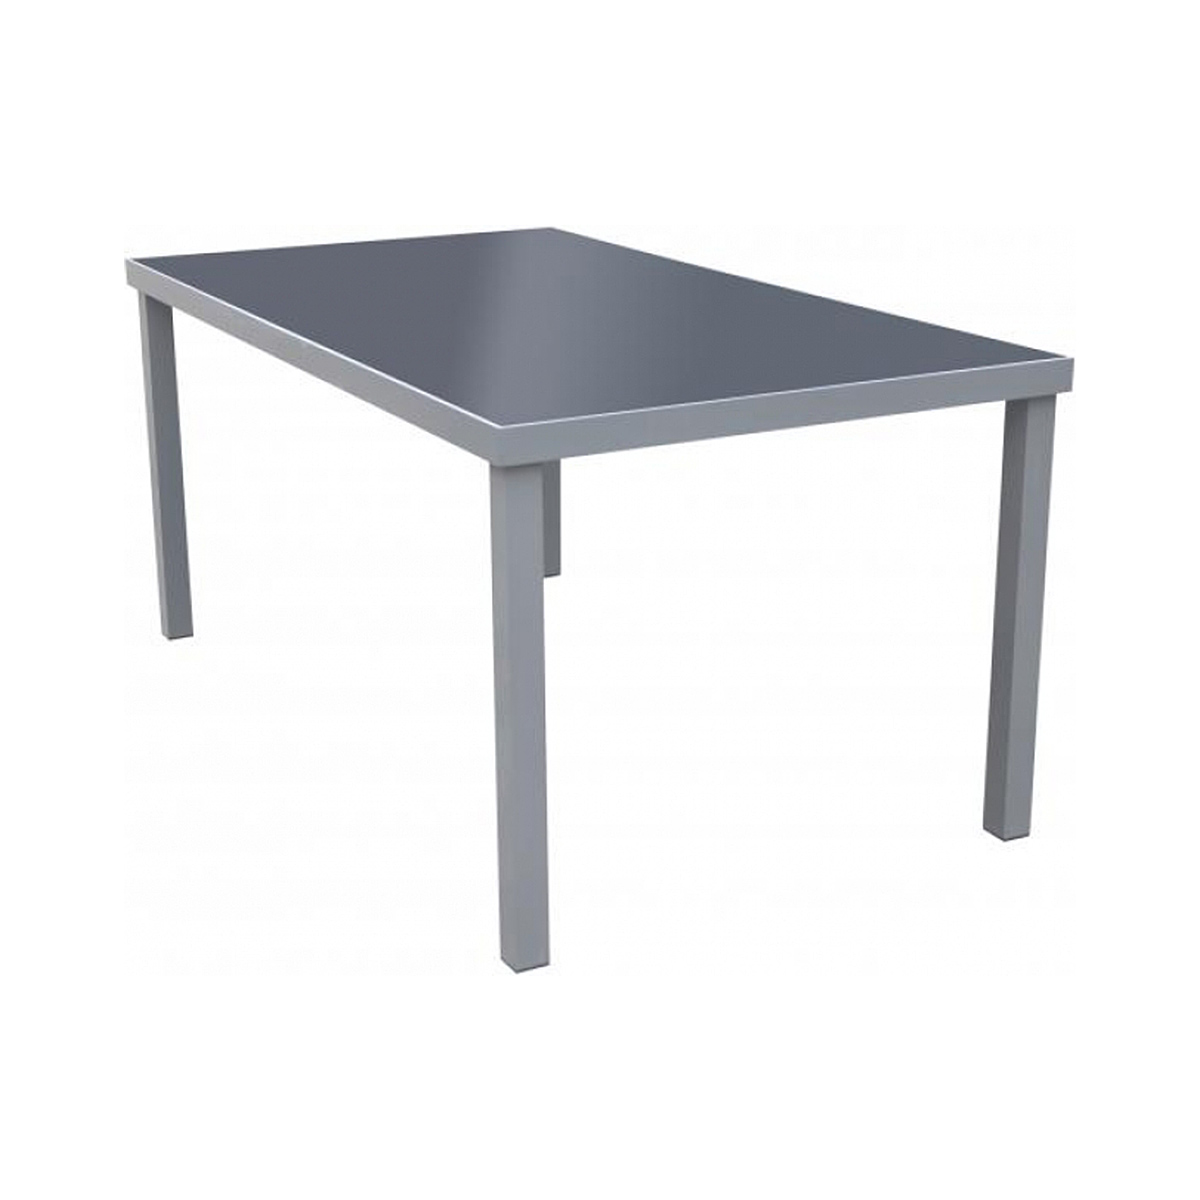 Table de jardin rectangulaire acier et verre trempé 160x90cm grise et noire